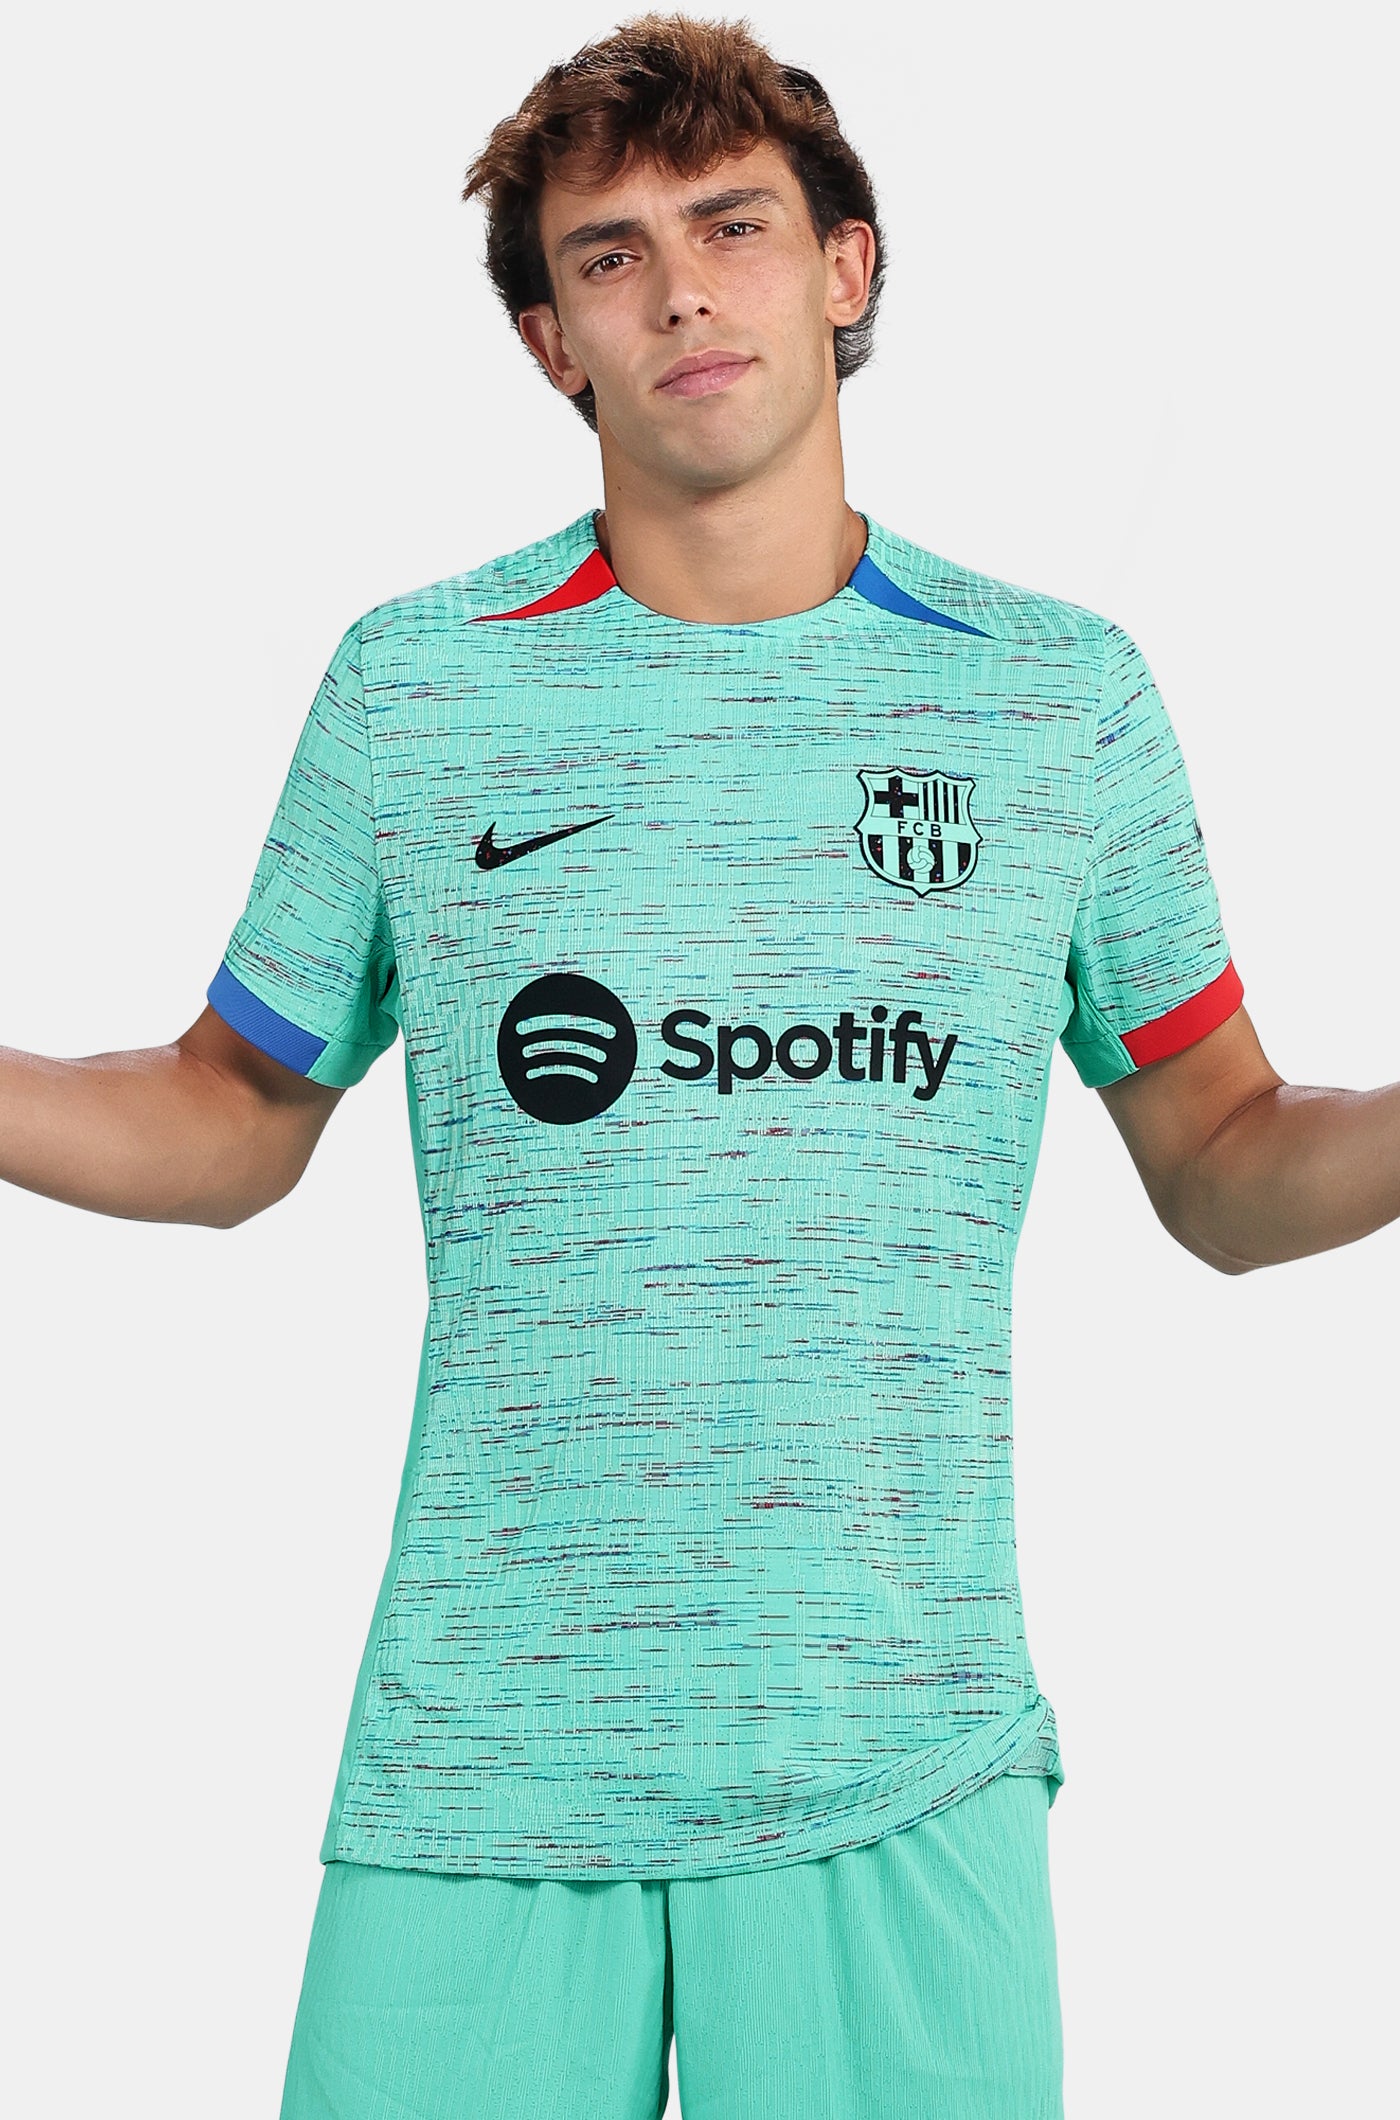 UCL FC Barcelona third shirt 23/24 Player’s Edition - JOÃO FÉLIX